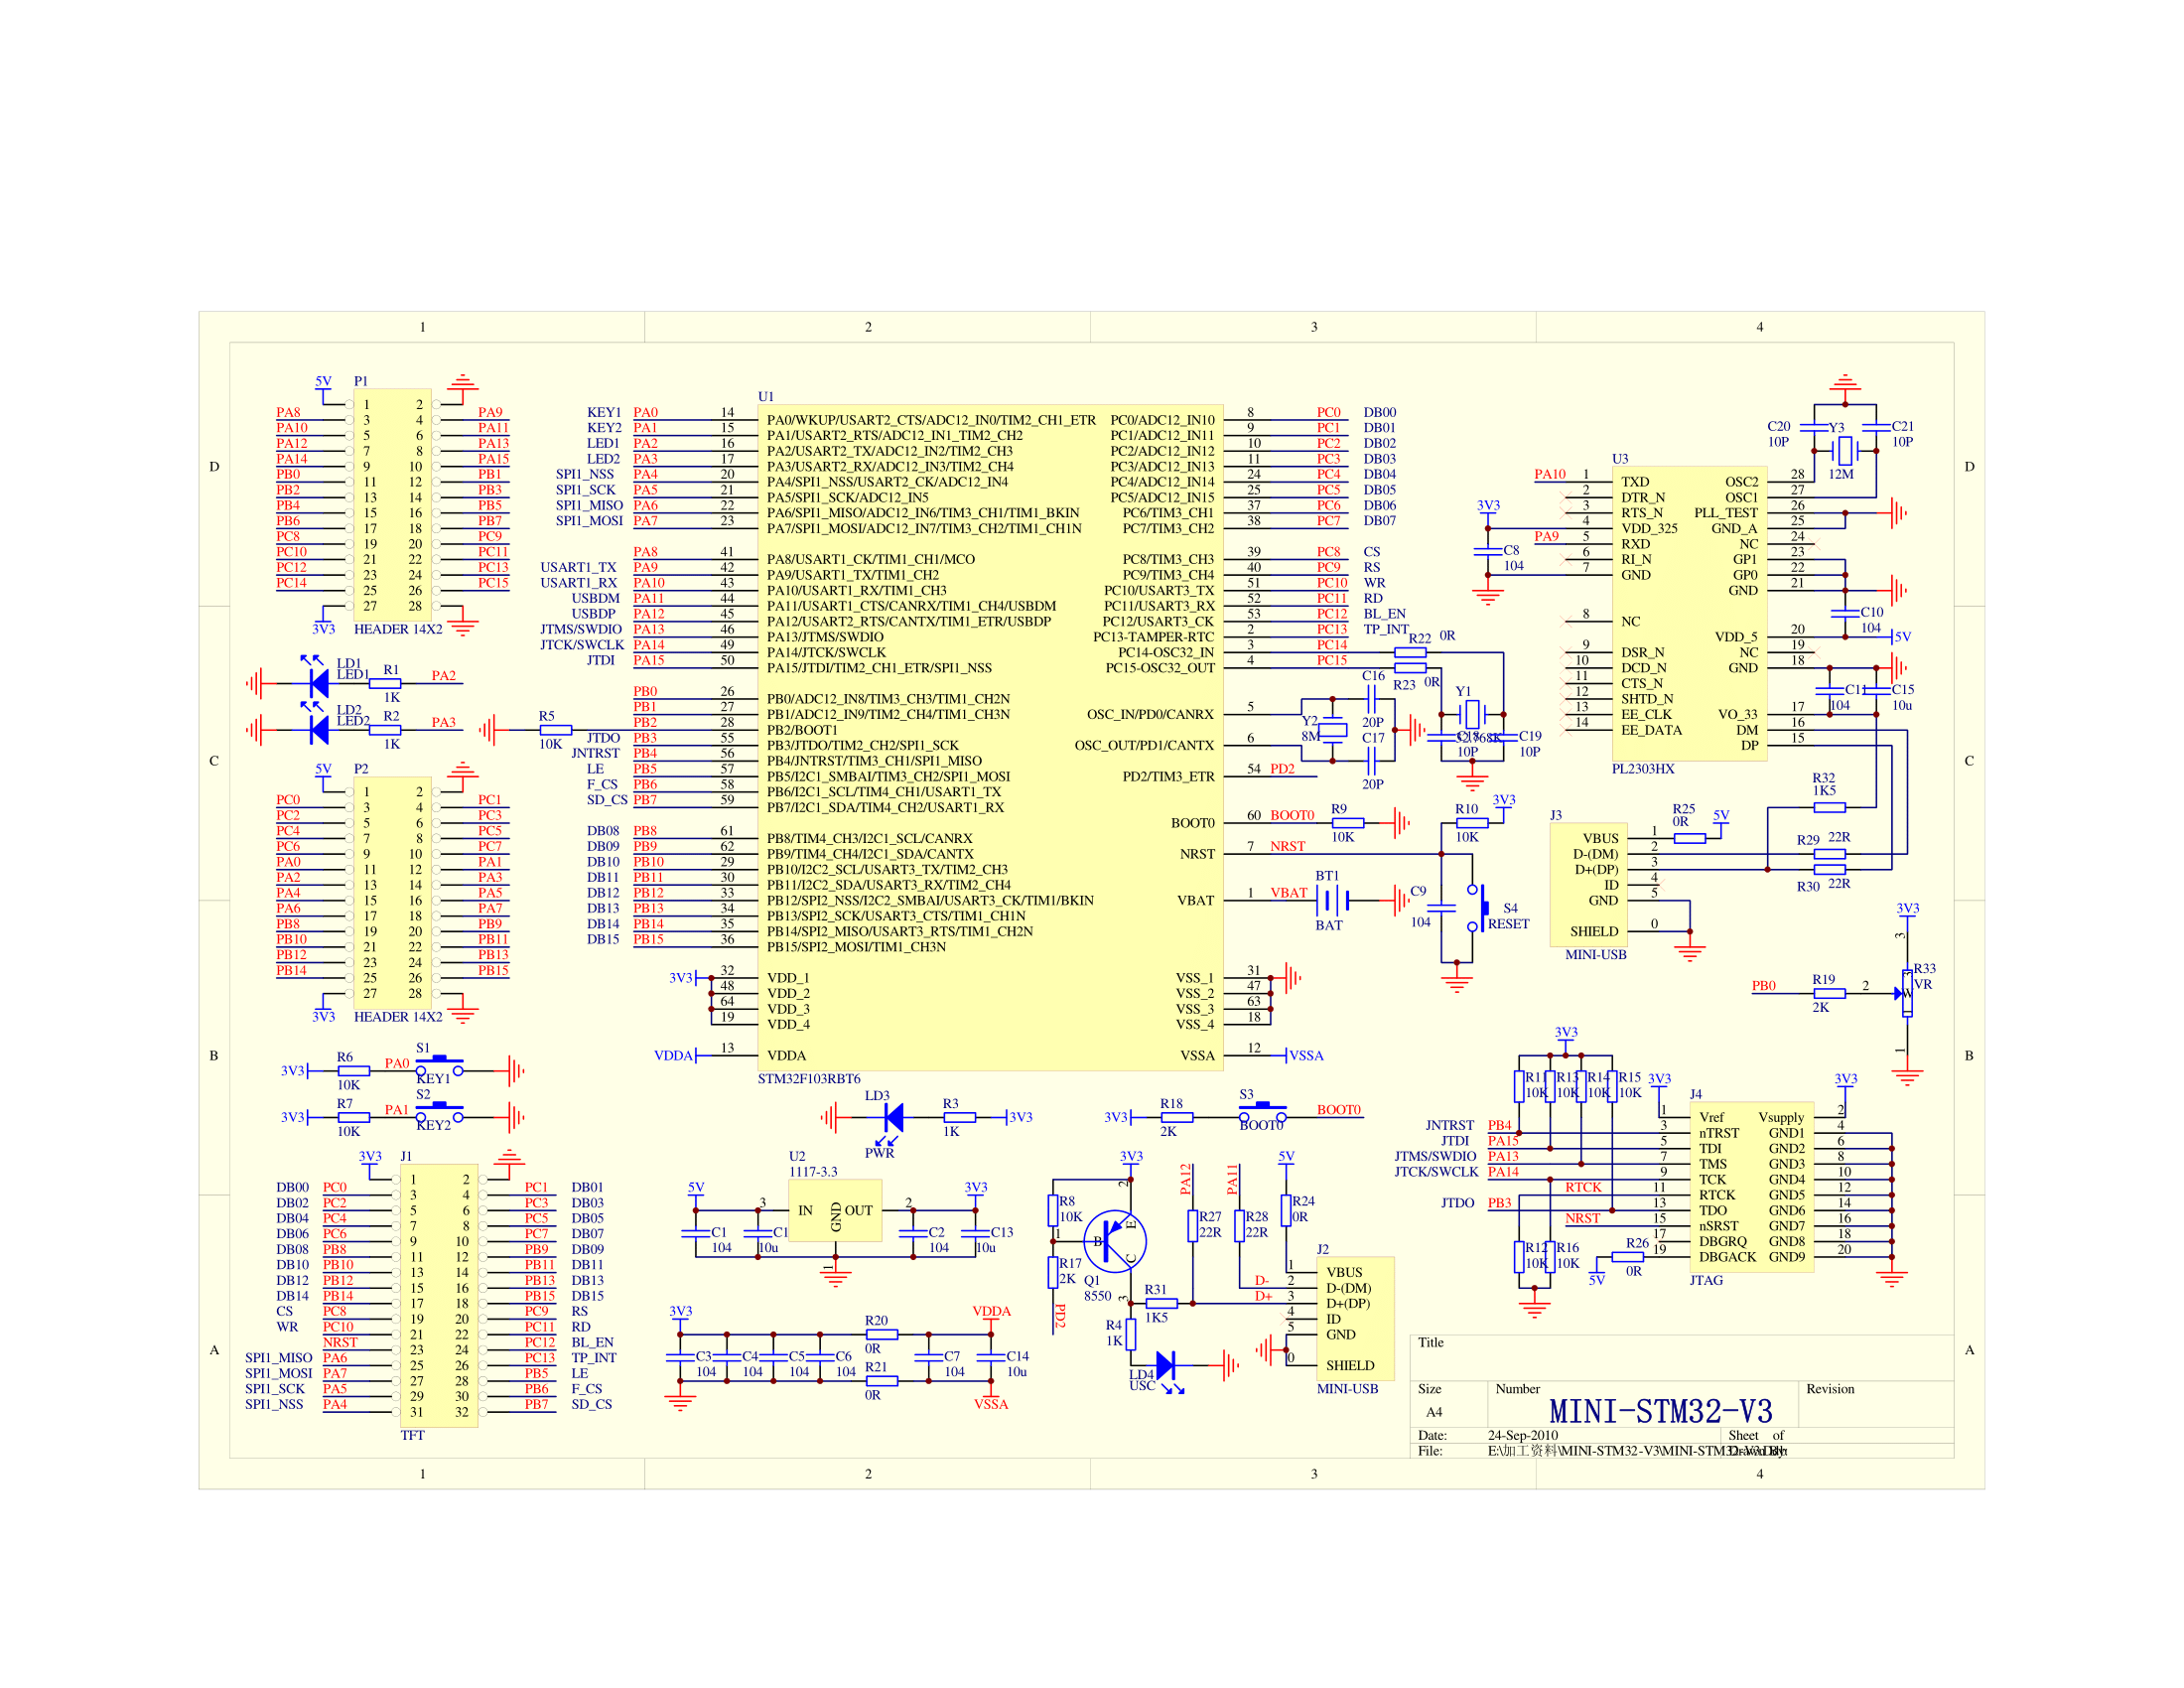 MINI_STM32-V3.0 schematic